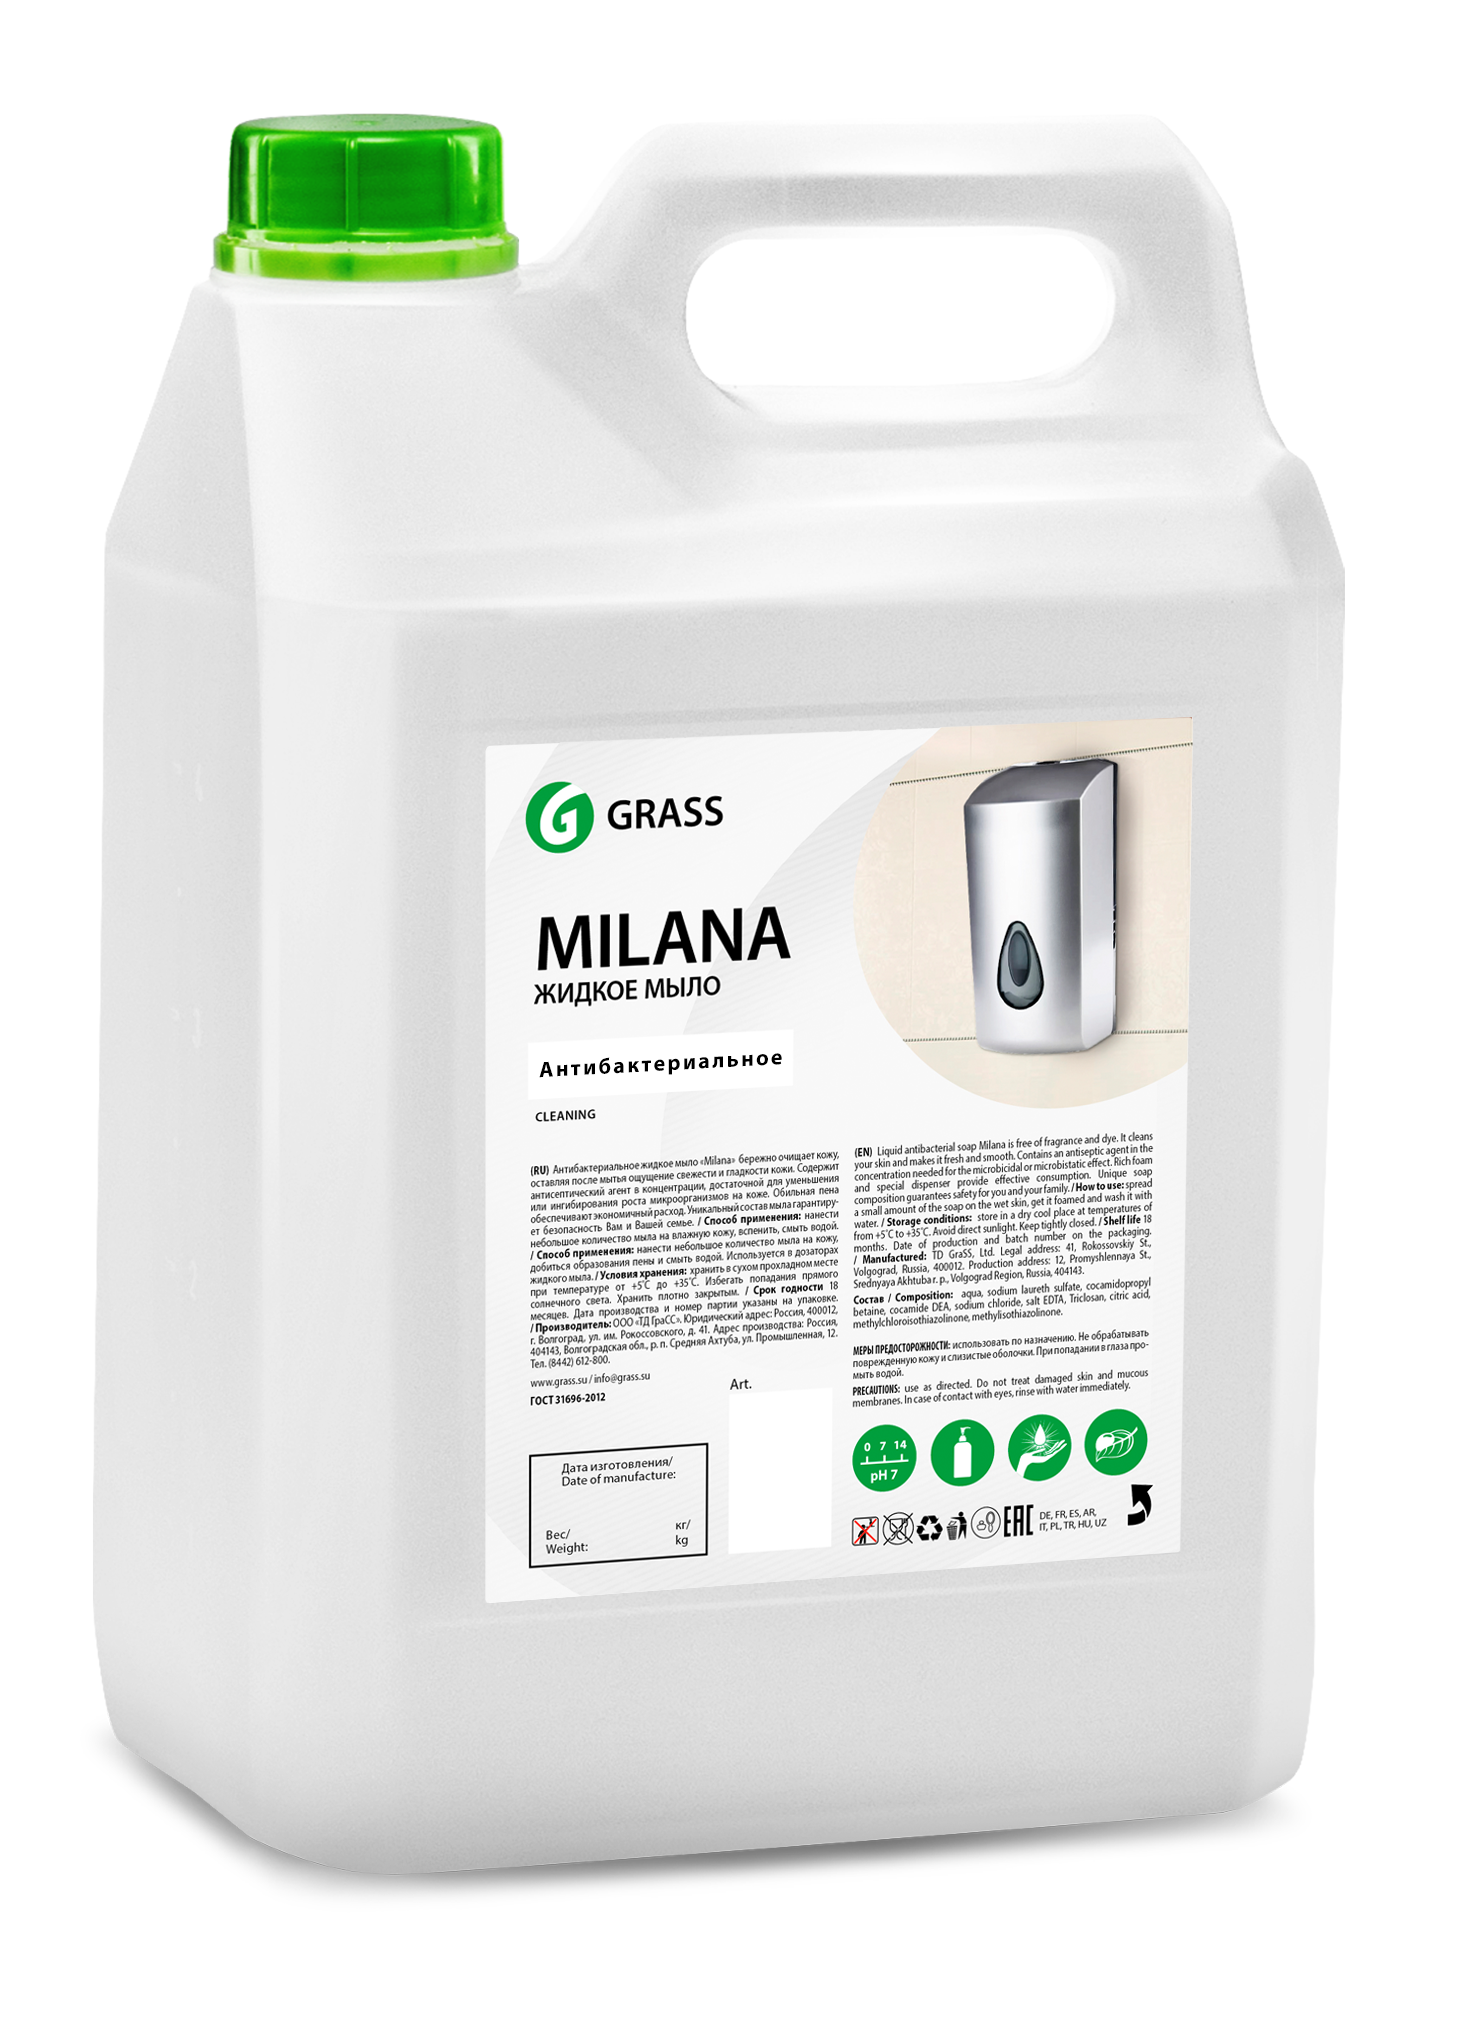 GRASS Жидкое мыло Milana антибактериальное 5л канистра 125361